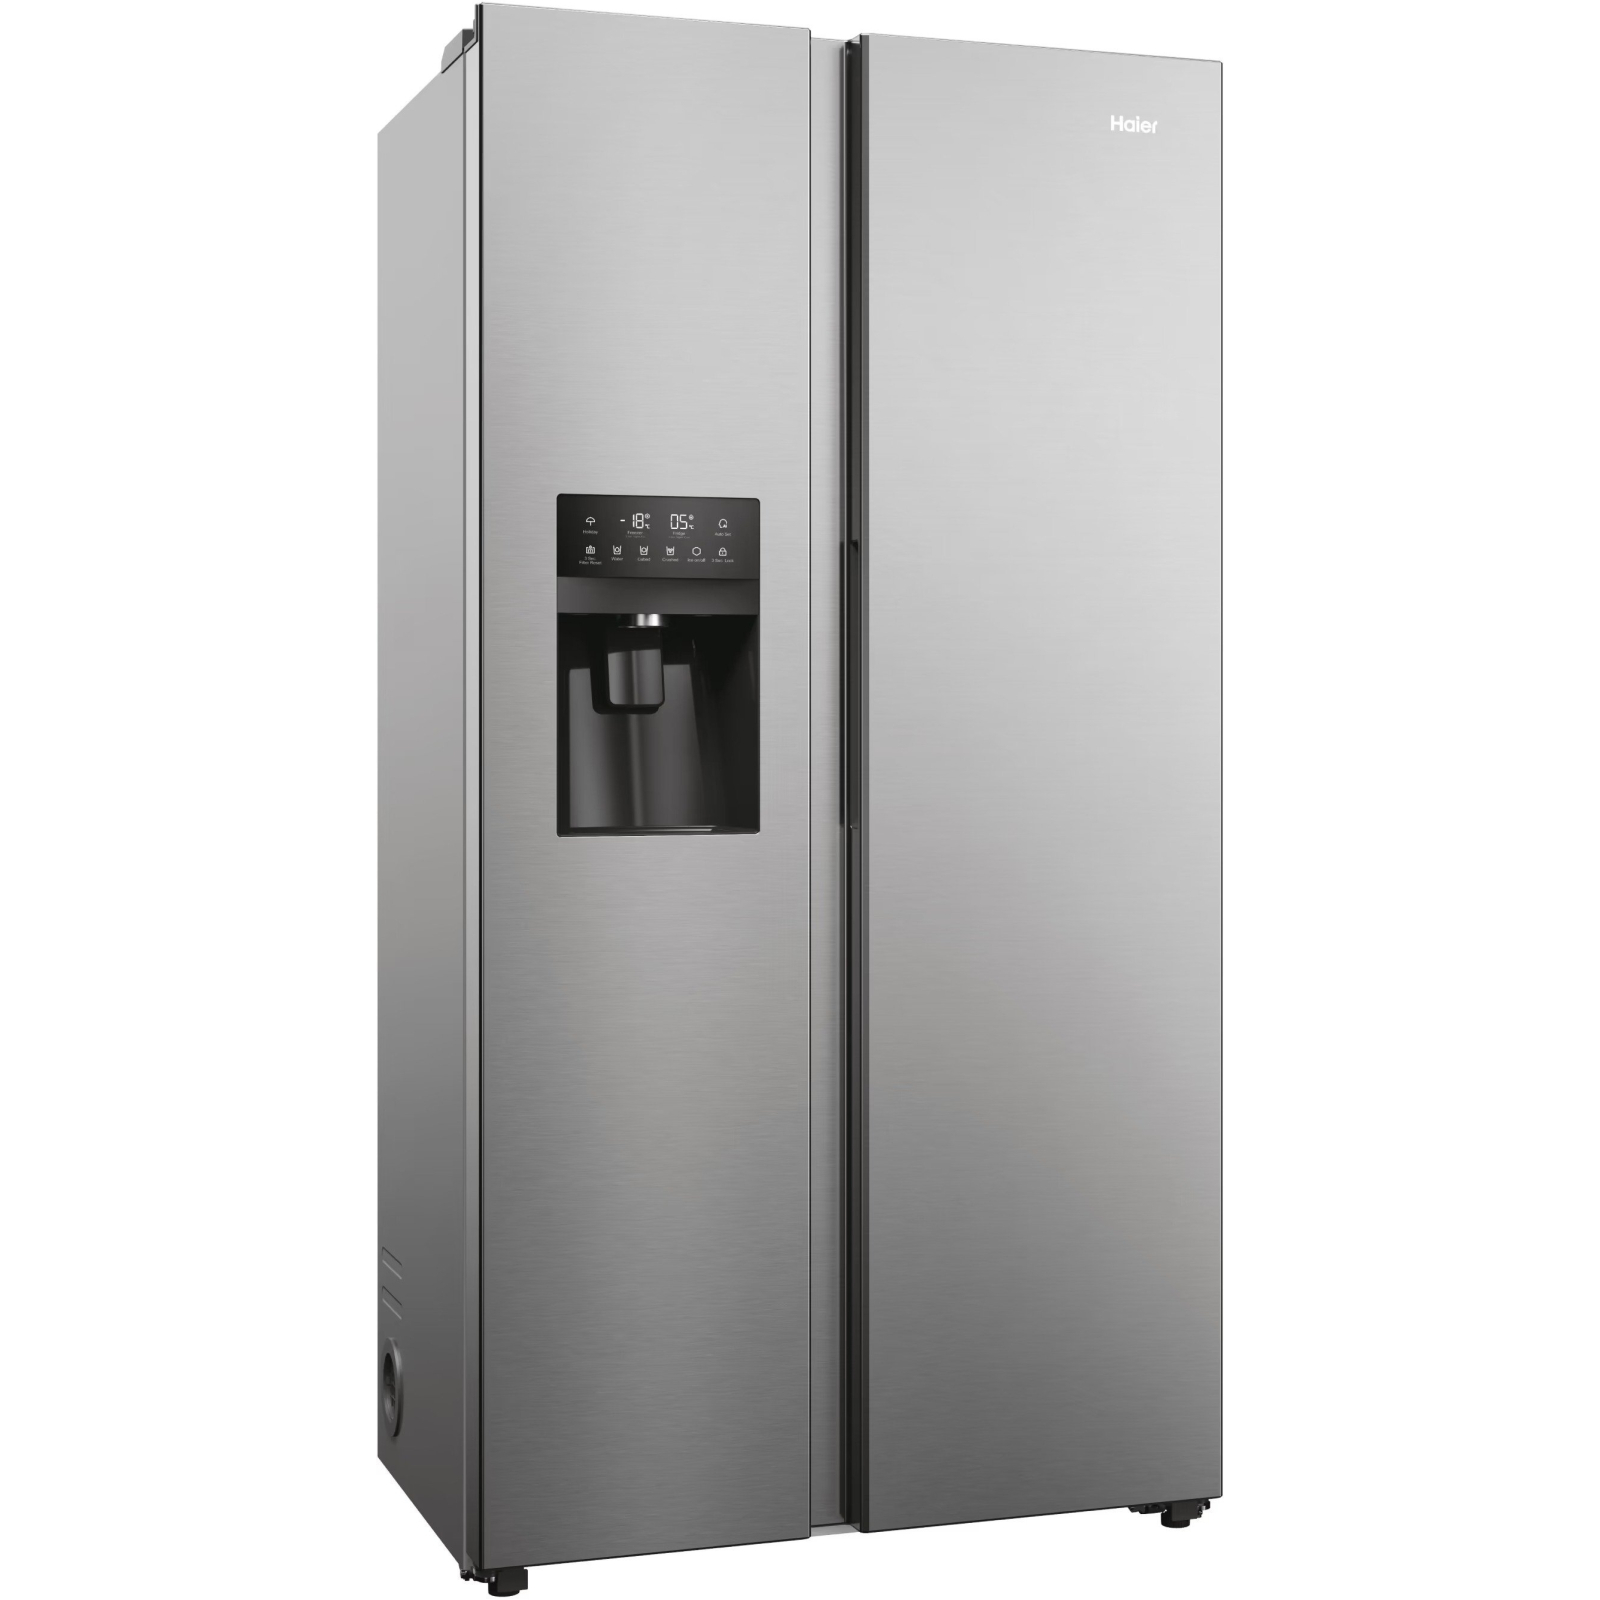 Холодильник Haier HSR5918DIMP изображение 2